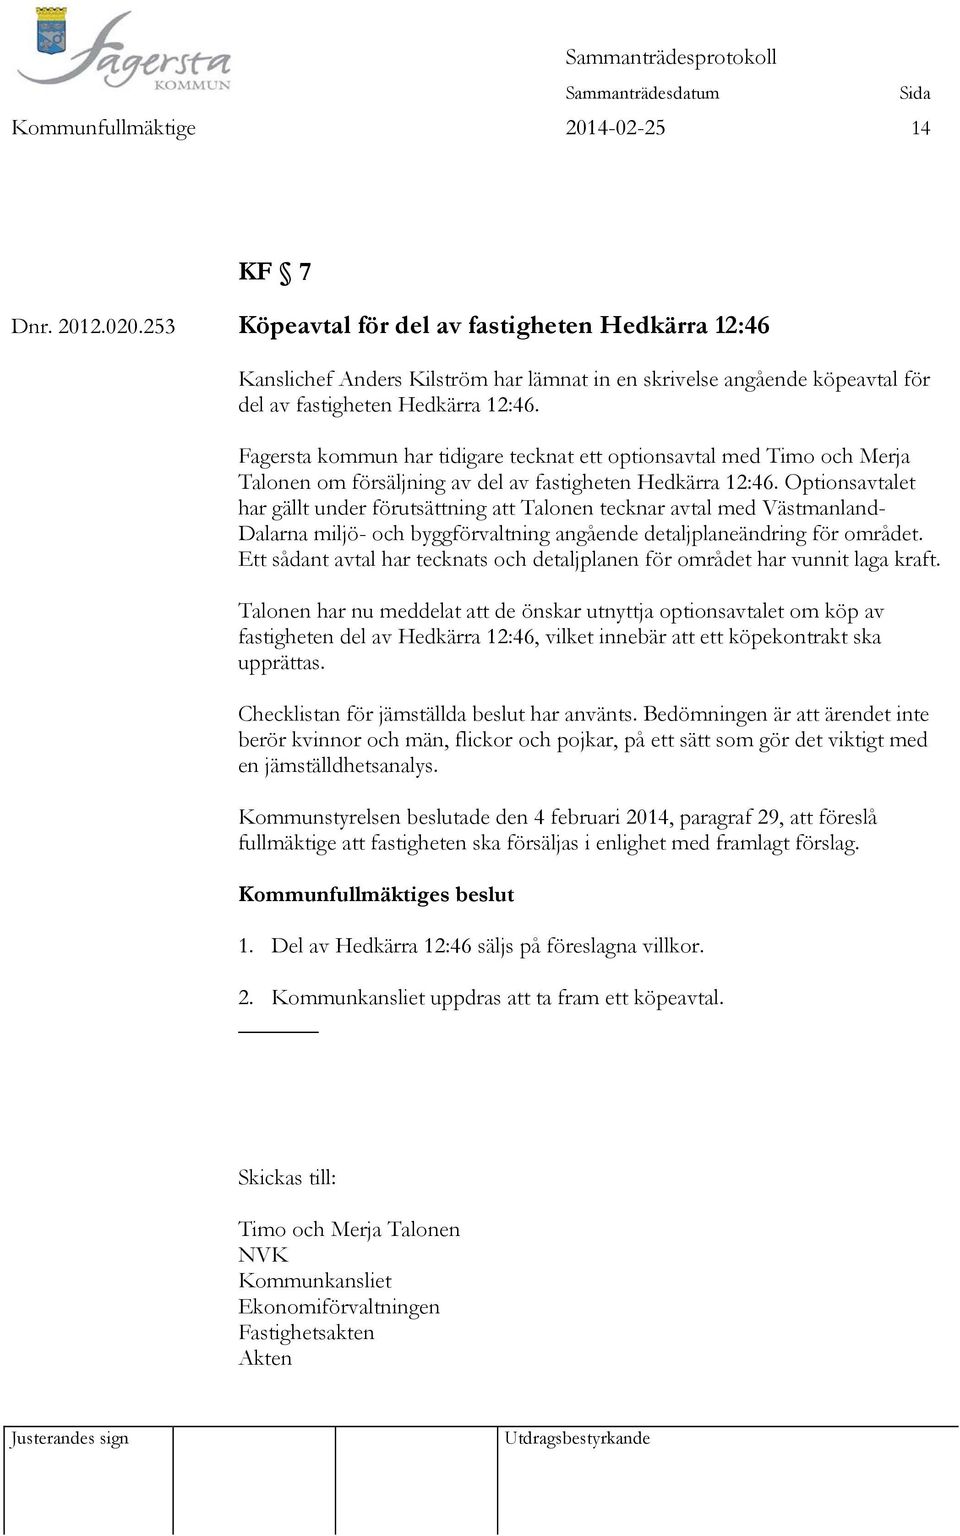 Fagersta kommun har tidigare tecknat ett optionsavtal med Timo och Merja Talonen om försäljning av del av fastigheten Hedkärra 12:46.